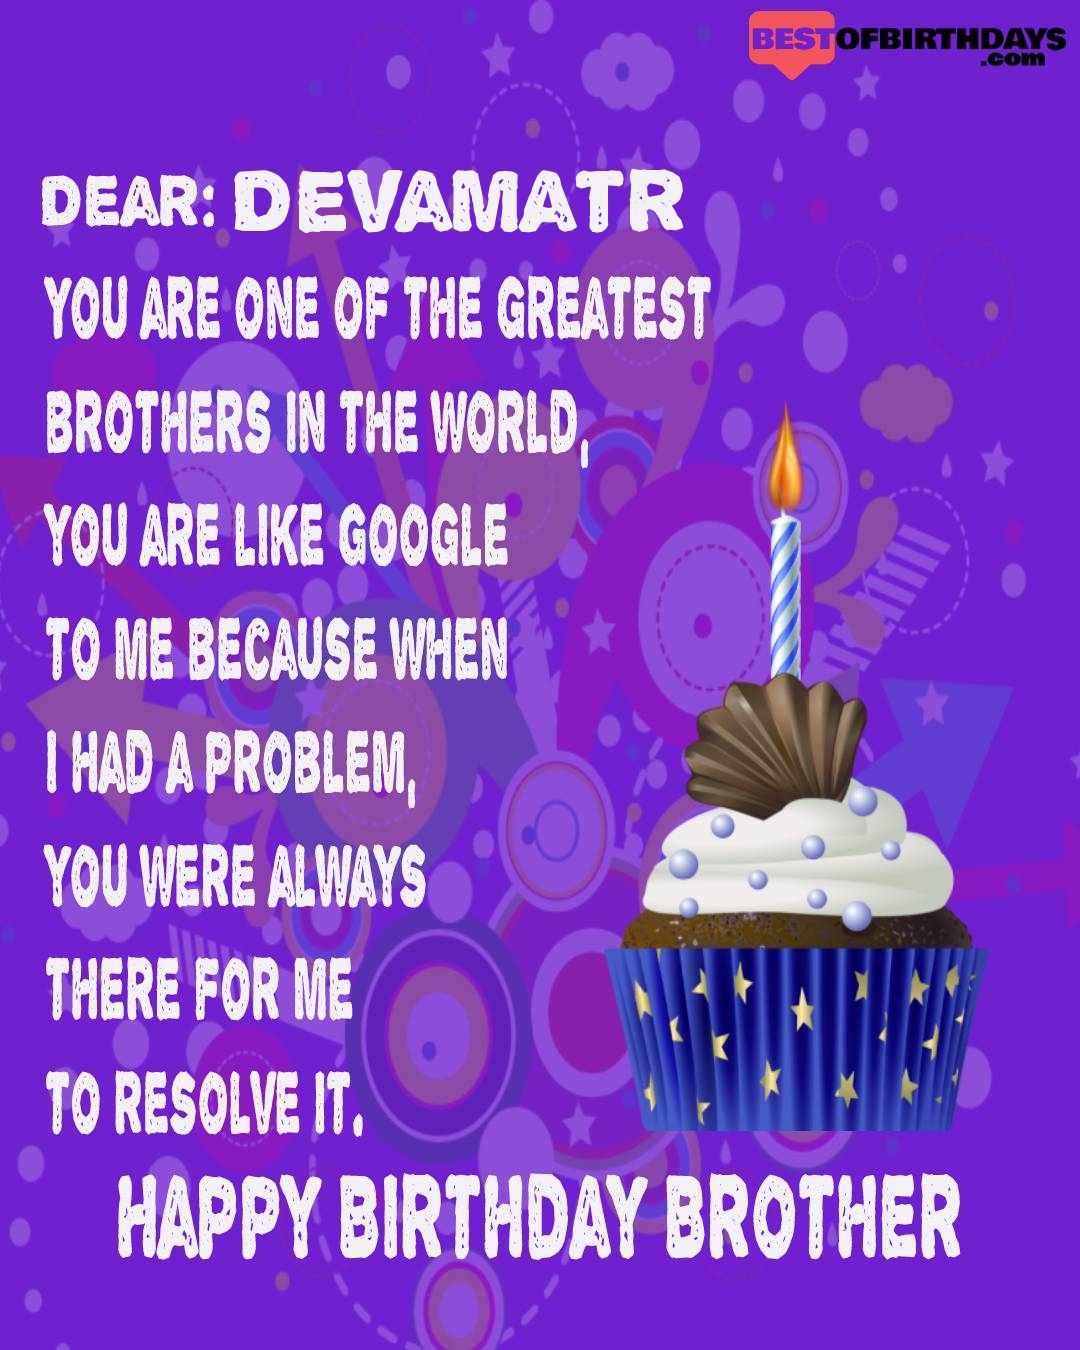 Happy birthday devamatr bhai brother bro